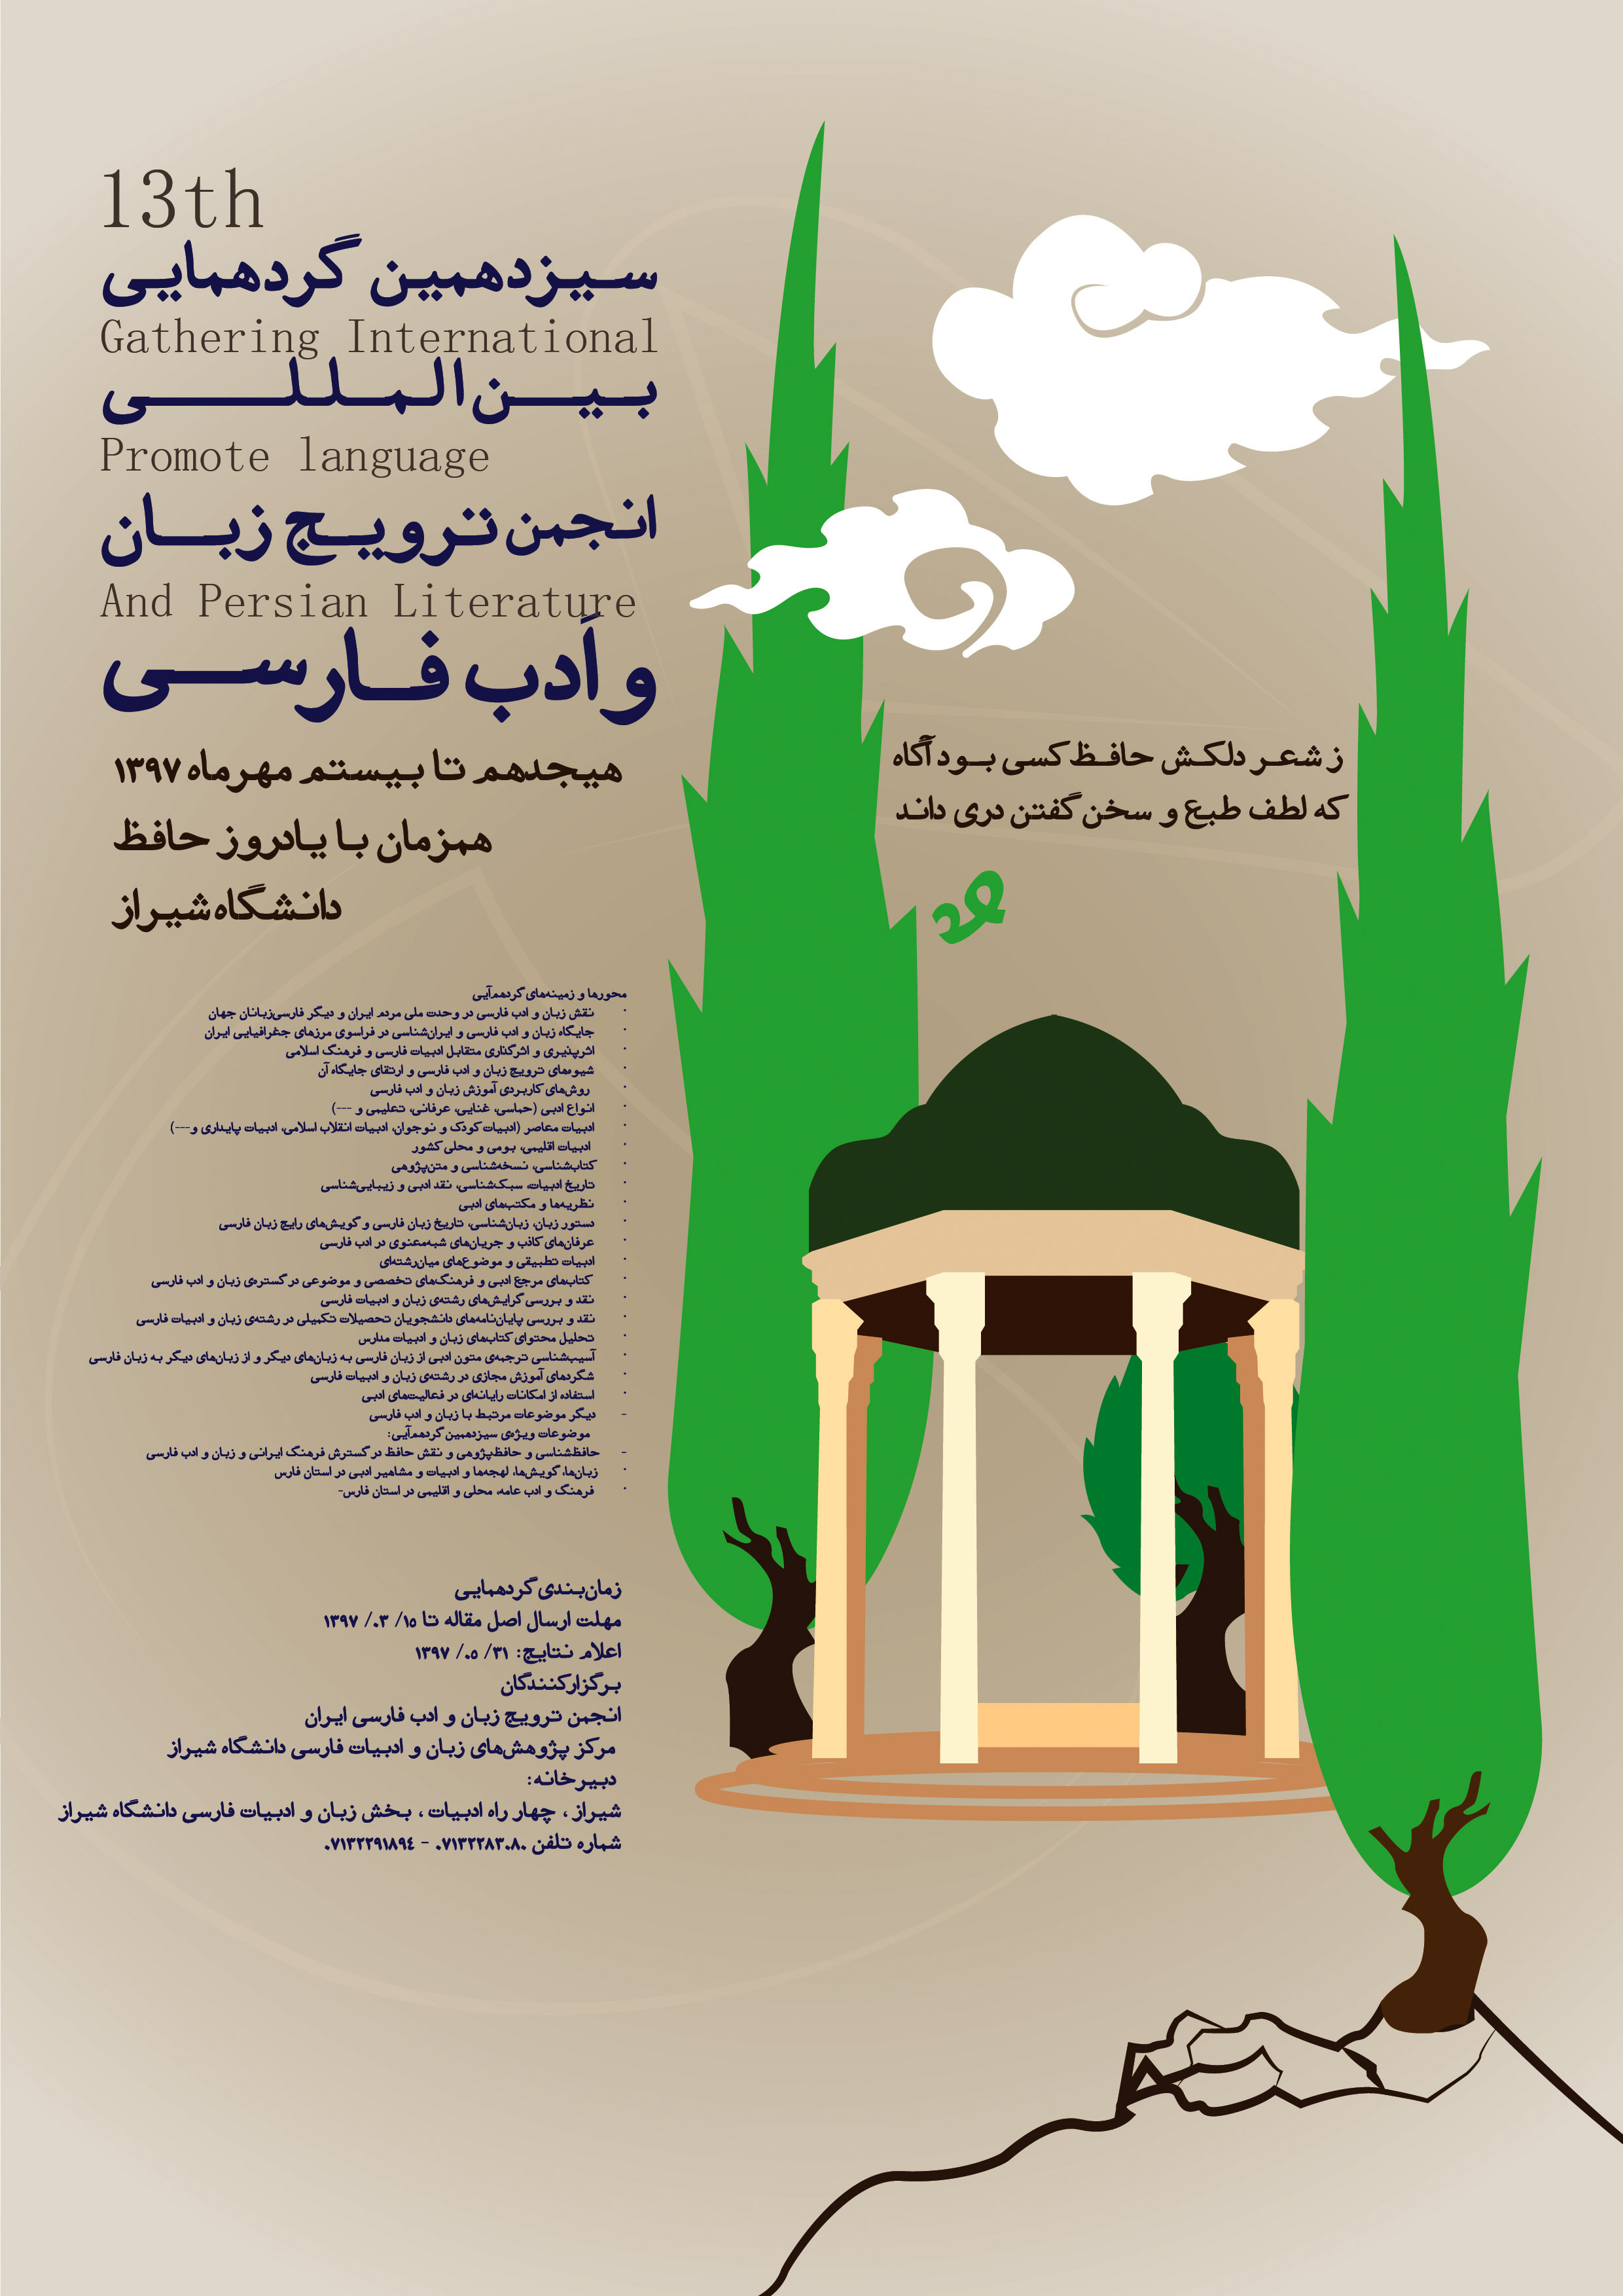 تمدید مهلت ارسال آثار به همایش انجمن ترویج زبان و ادب فارسی